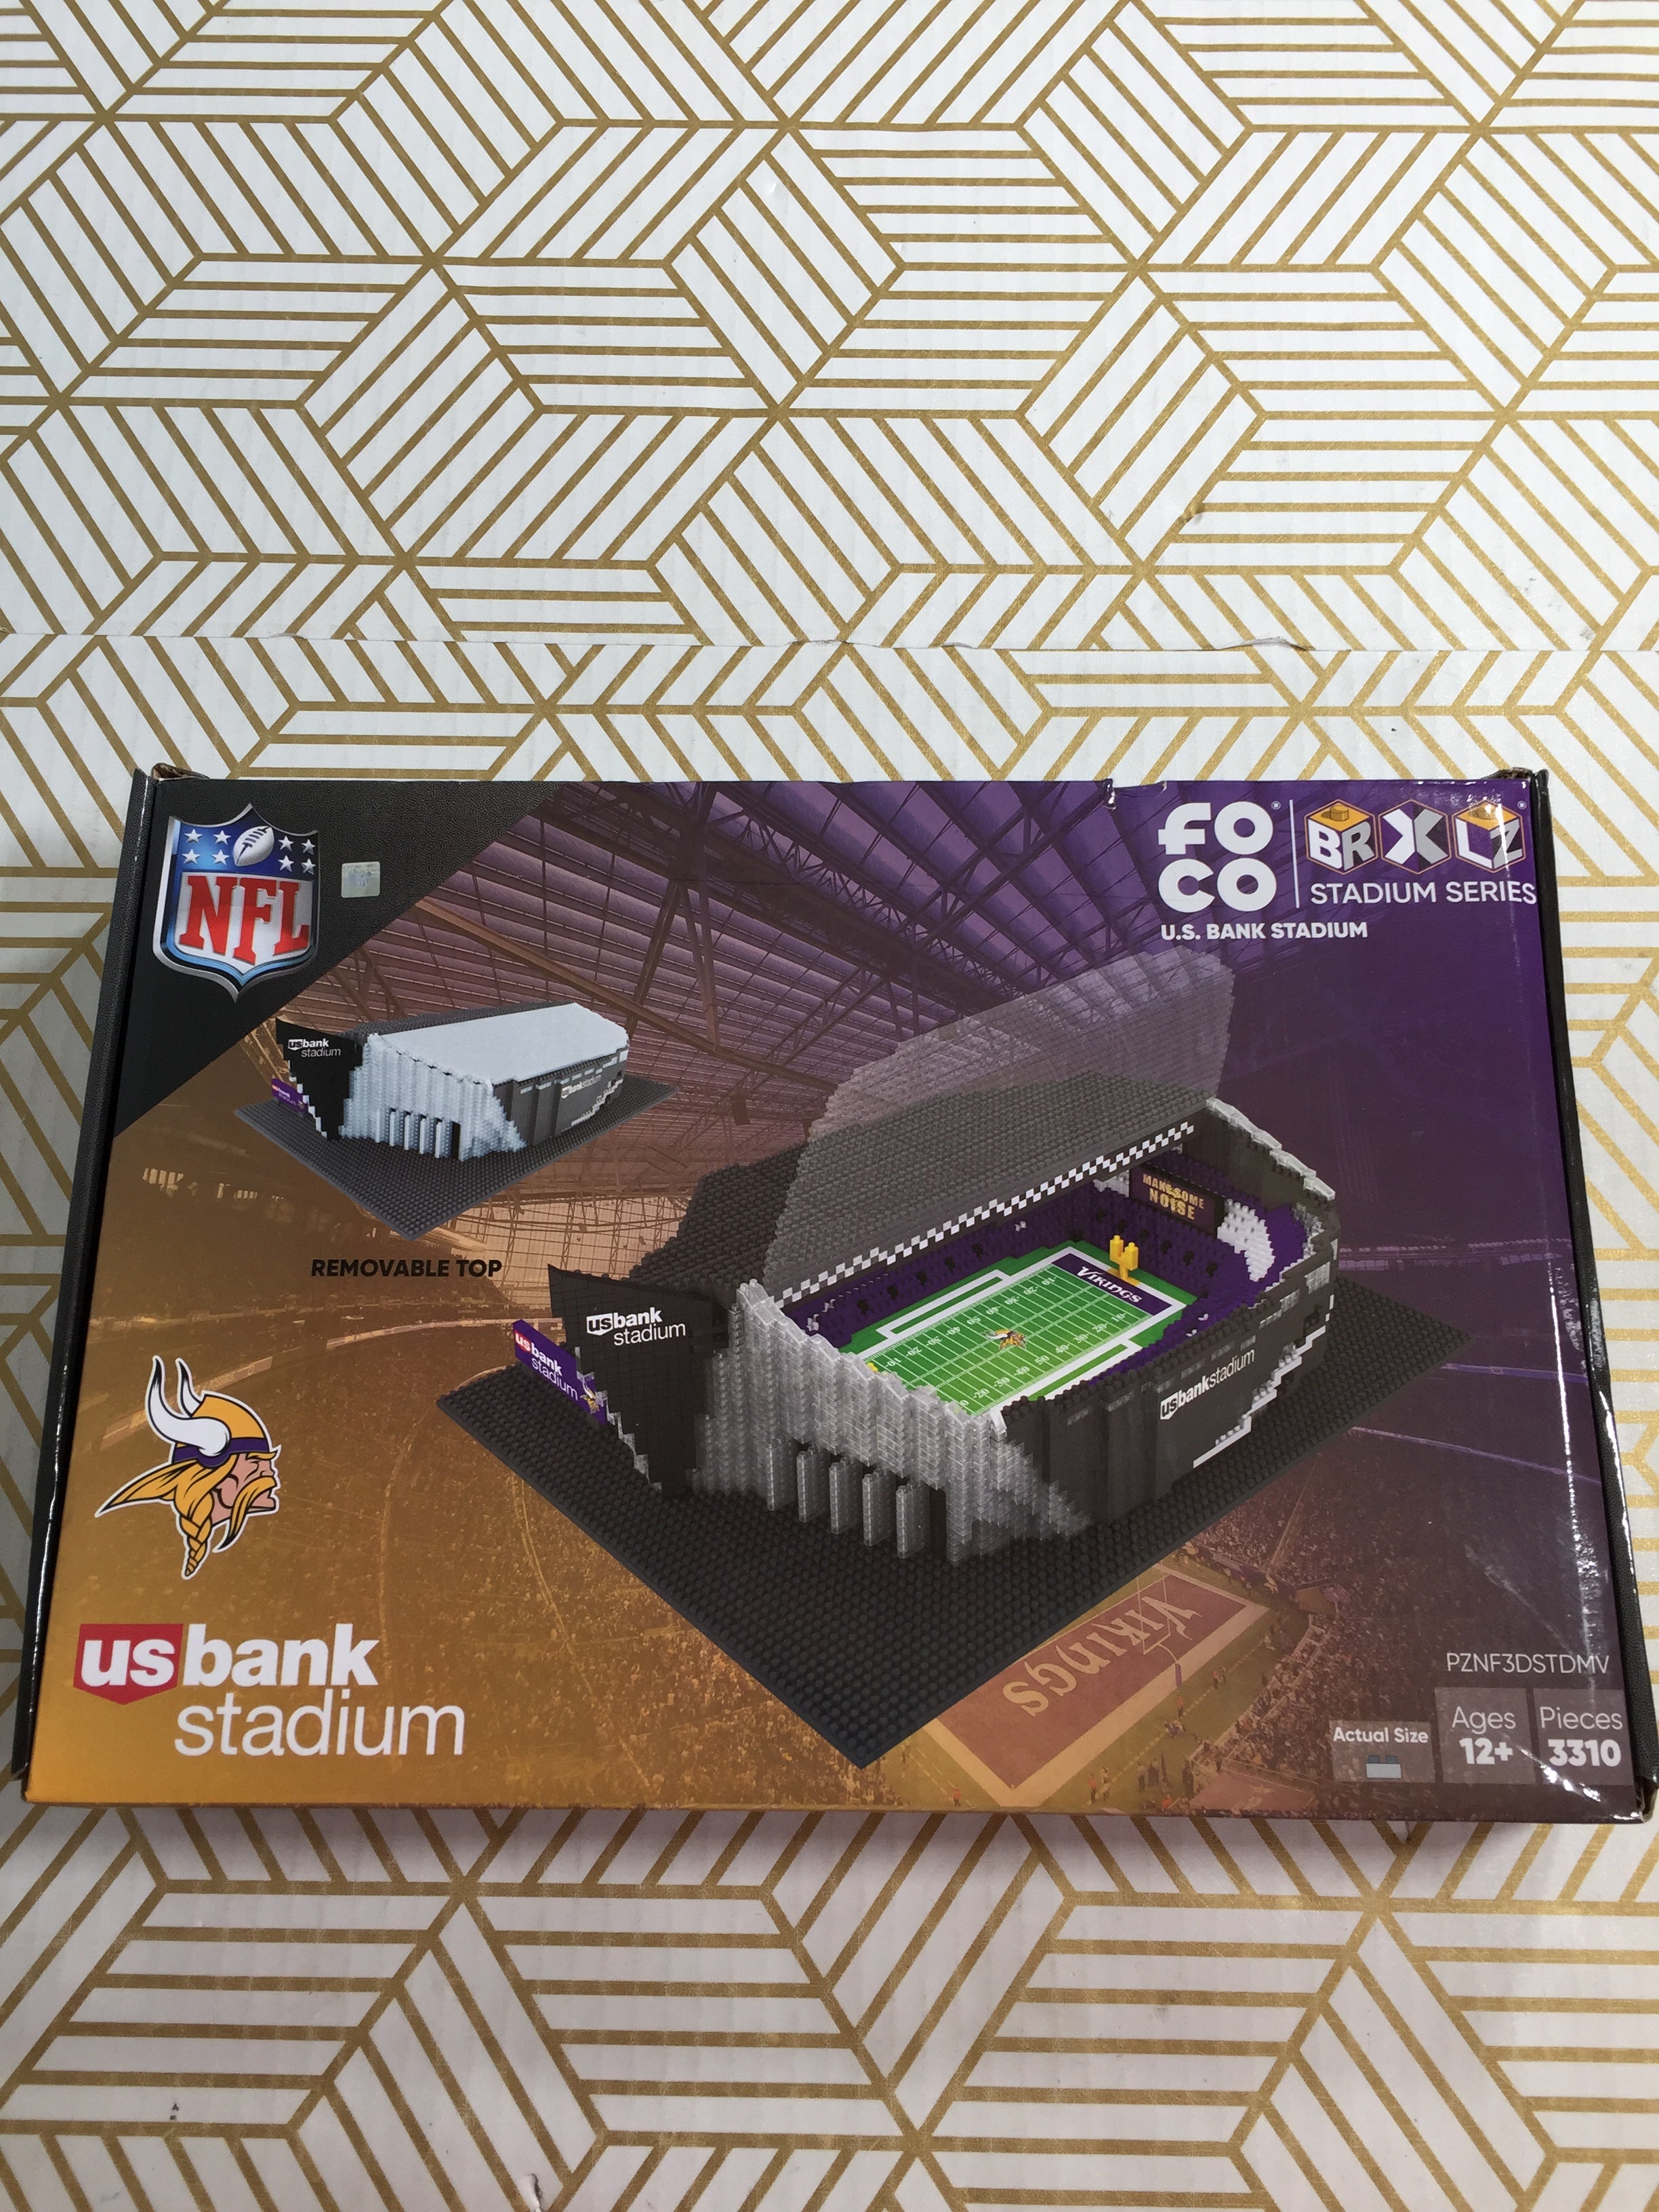 FOCO NFL Minnesota Vikings US Bank Stadium Set 3310 Pieces *SEALED* (7851391975662)